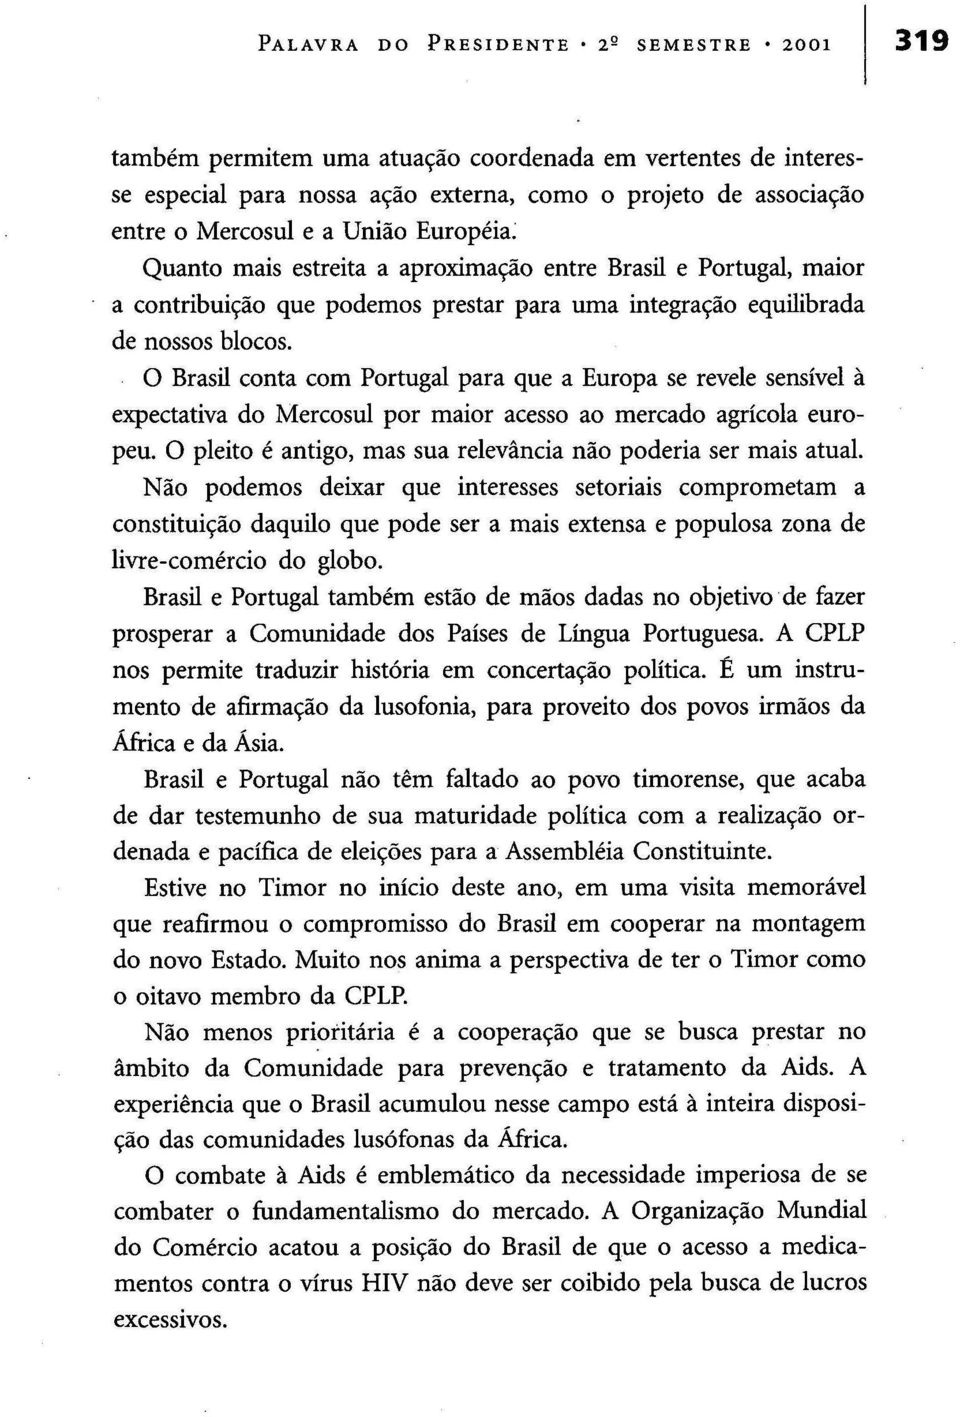 O Brasil conta com Portugal para que a Europa se revele sensível à expectativa do Mercosul por maior acesso ao mercado agrícola europeu.